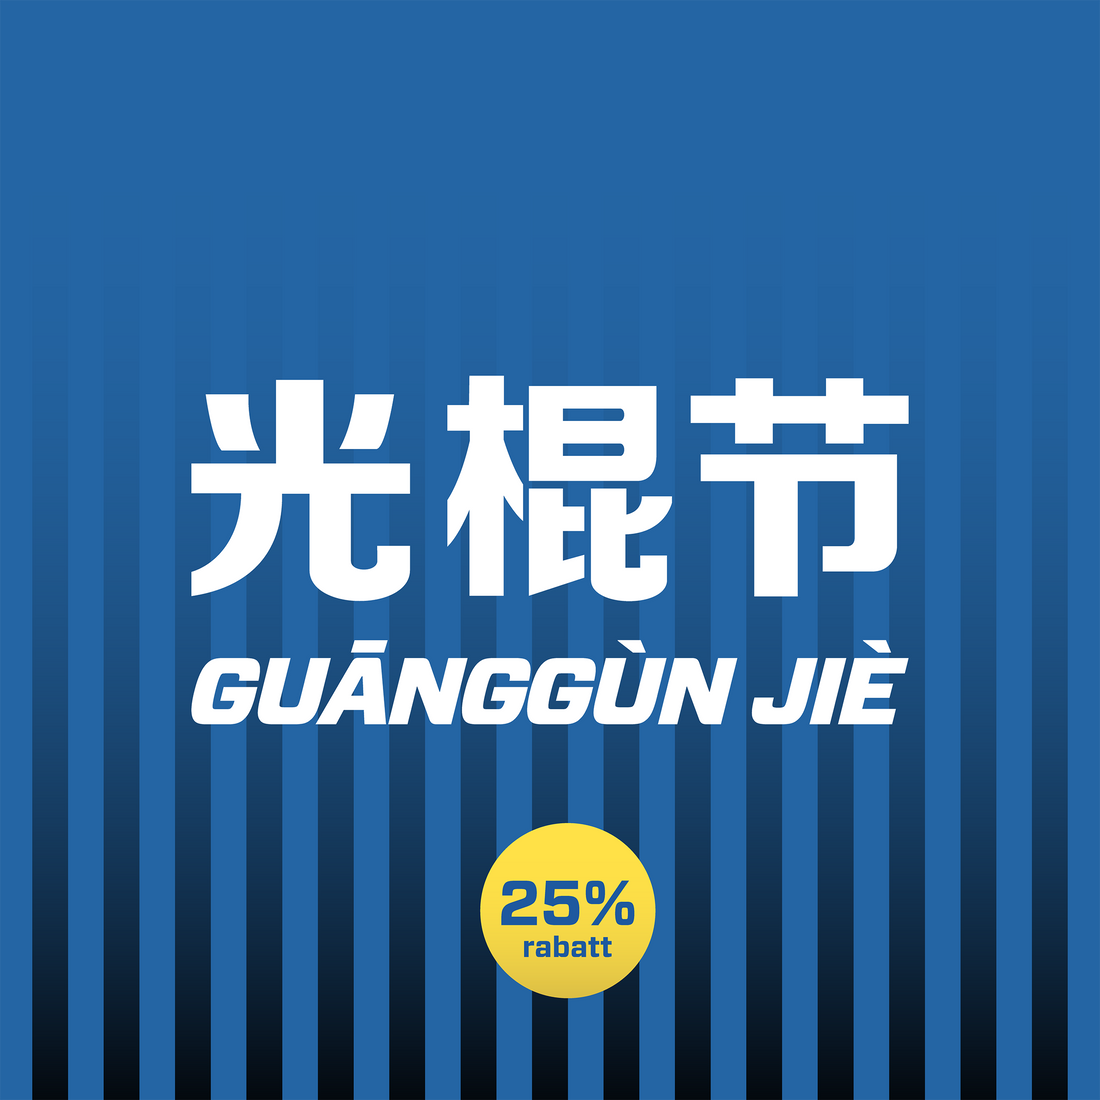 Missa inte Guanggun Jie - världens största shoppingdag!